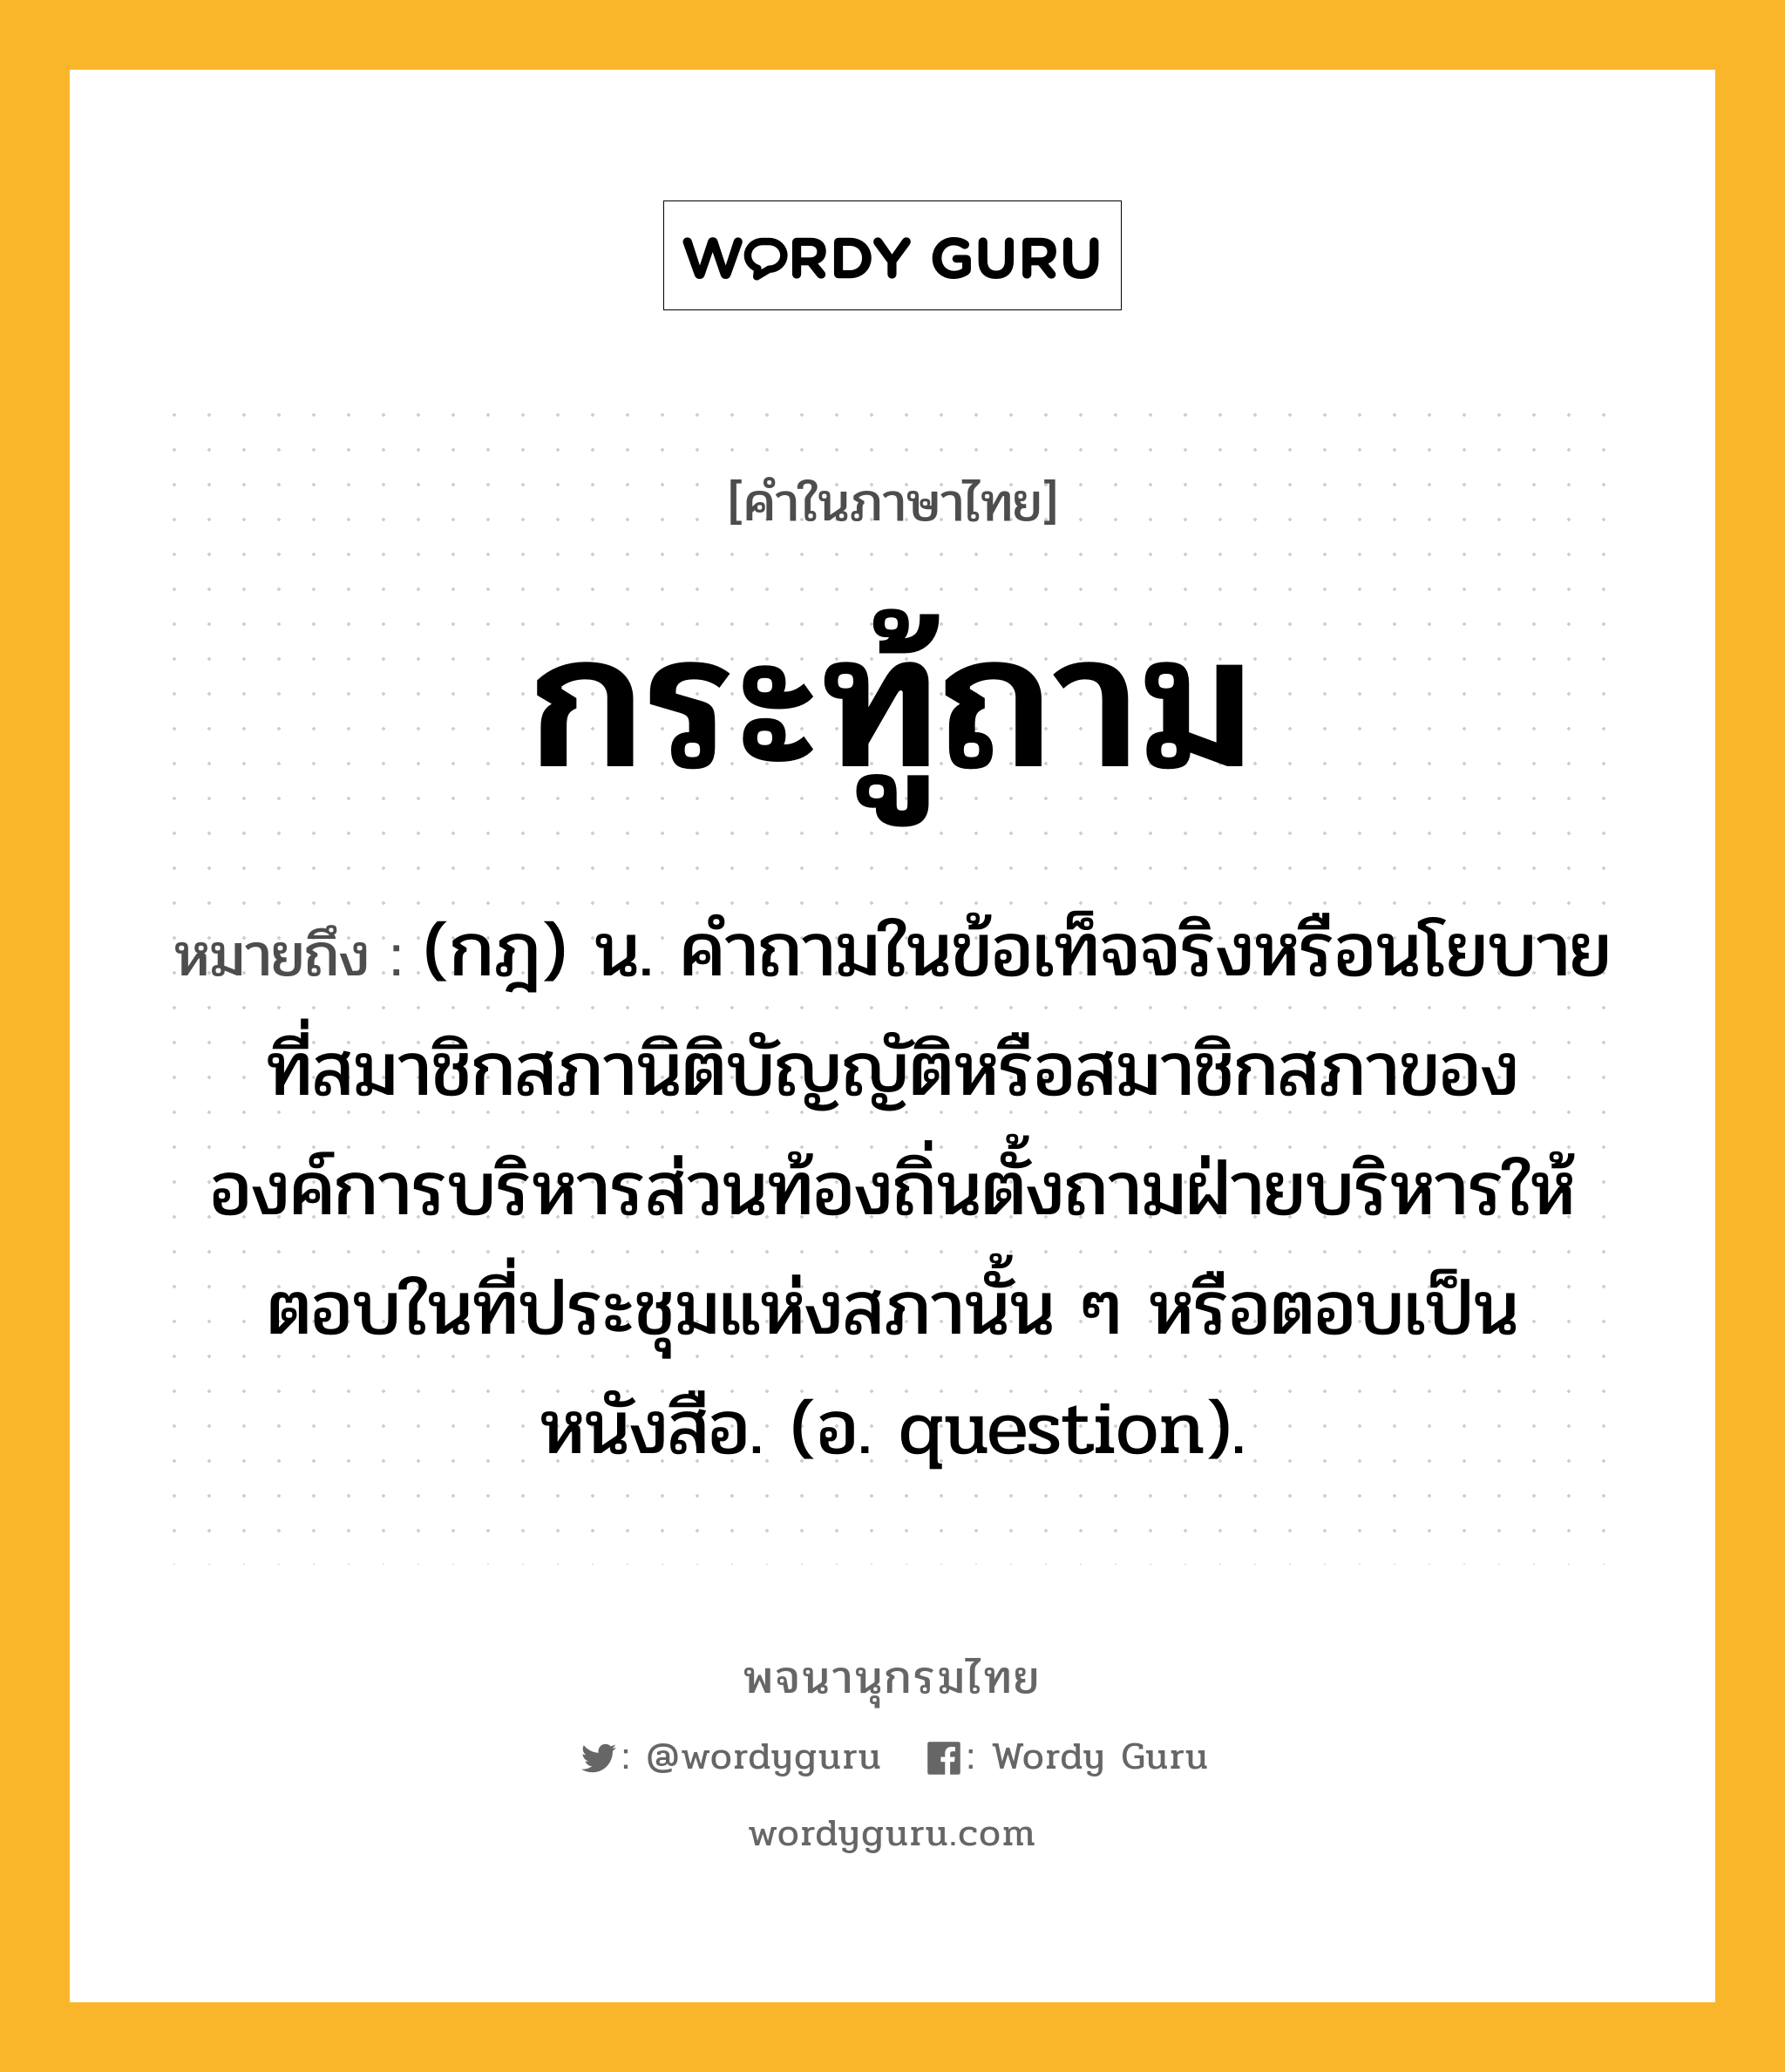 กระทู้ถาม หมายถึงอะไร?, คำในภาษาไทย กระทู้ถาม หมายถึง (กฎ) น. คําถามในข้อเท็จจริงหรือนโยบายที่สมาชิกสภานิติบัญญัติหรือสมาชิกสภาขององค์การบริหารส่วนท้องถิ่นตั้งถามฝ่ายบริหารให้ตอบในที่ประชุมแห่งสภานั้น ๆ หรือตอบเป็นหนังสือ. (อ. question).